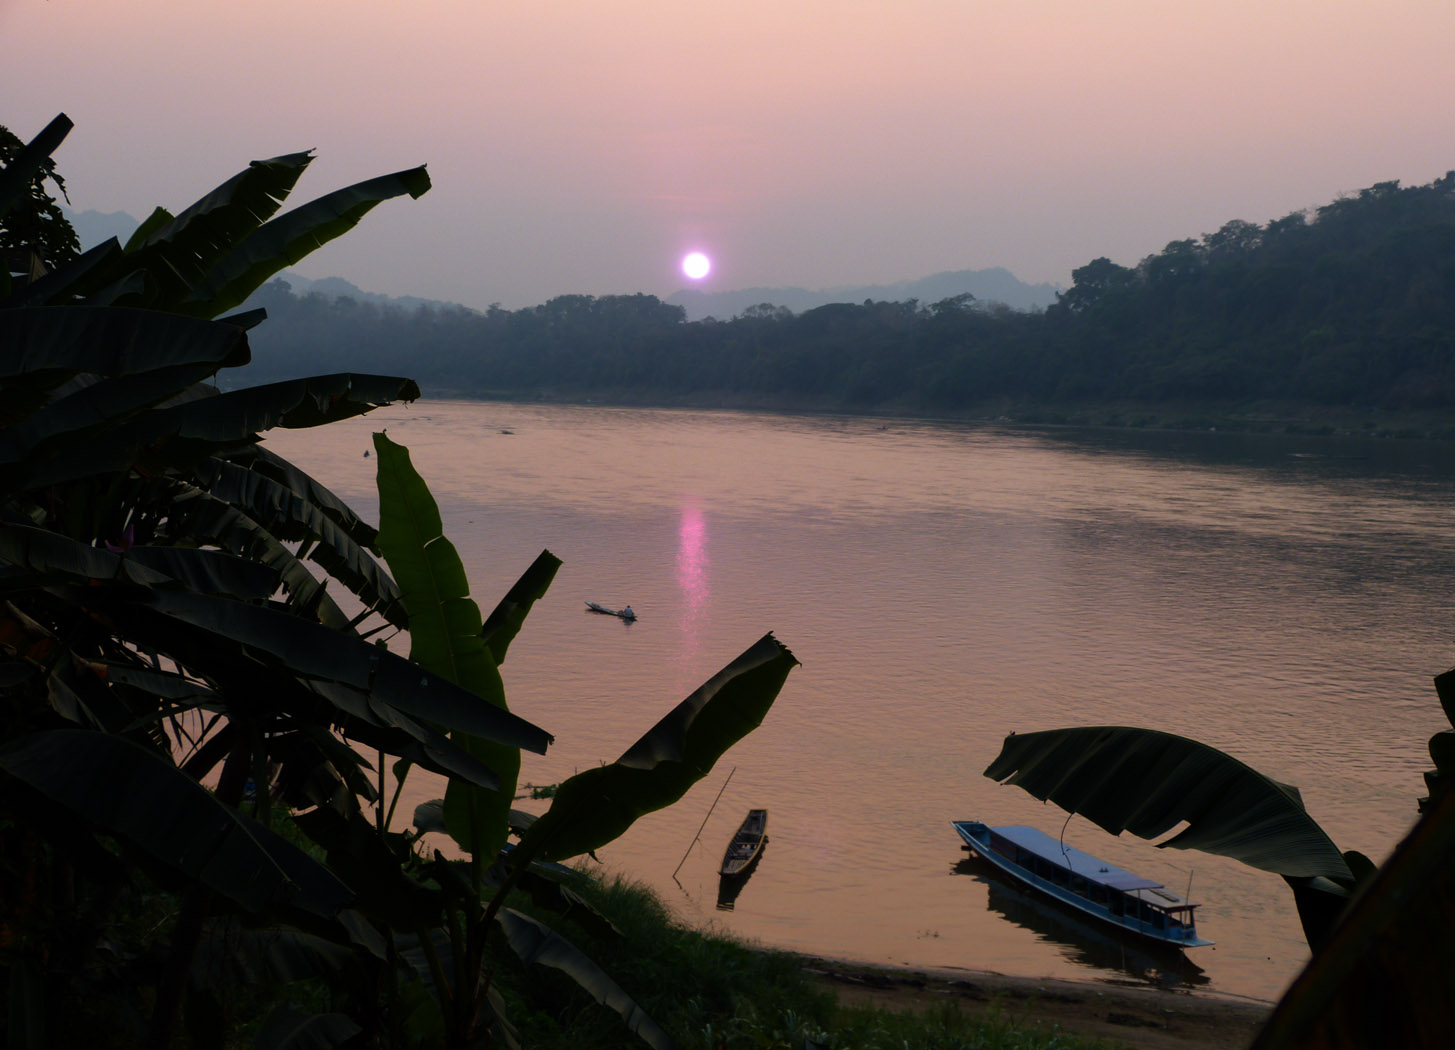 Sunset over Mekong River, Luang Prabang, Laos